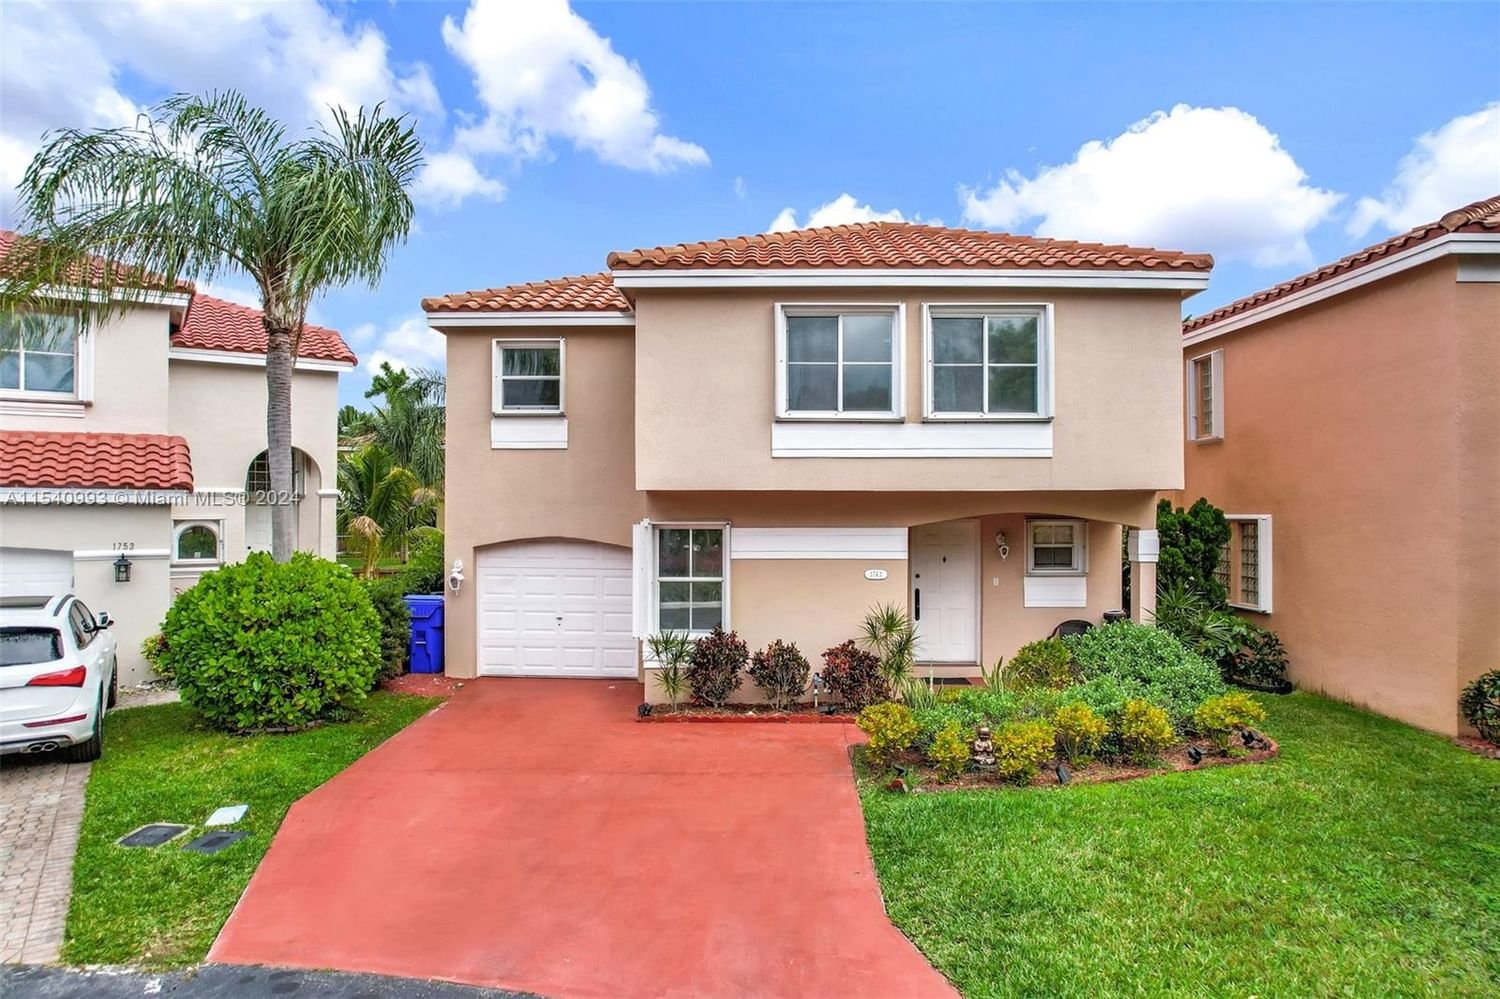 Real estate property located at 1743 Royal Palm Way, Broward County, HOMES AT EAST LAKE, Hollywood, FL